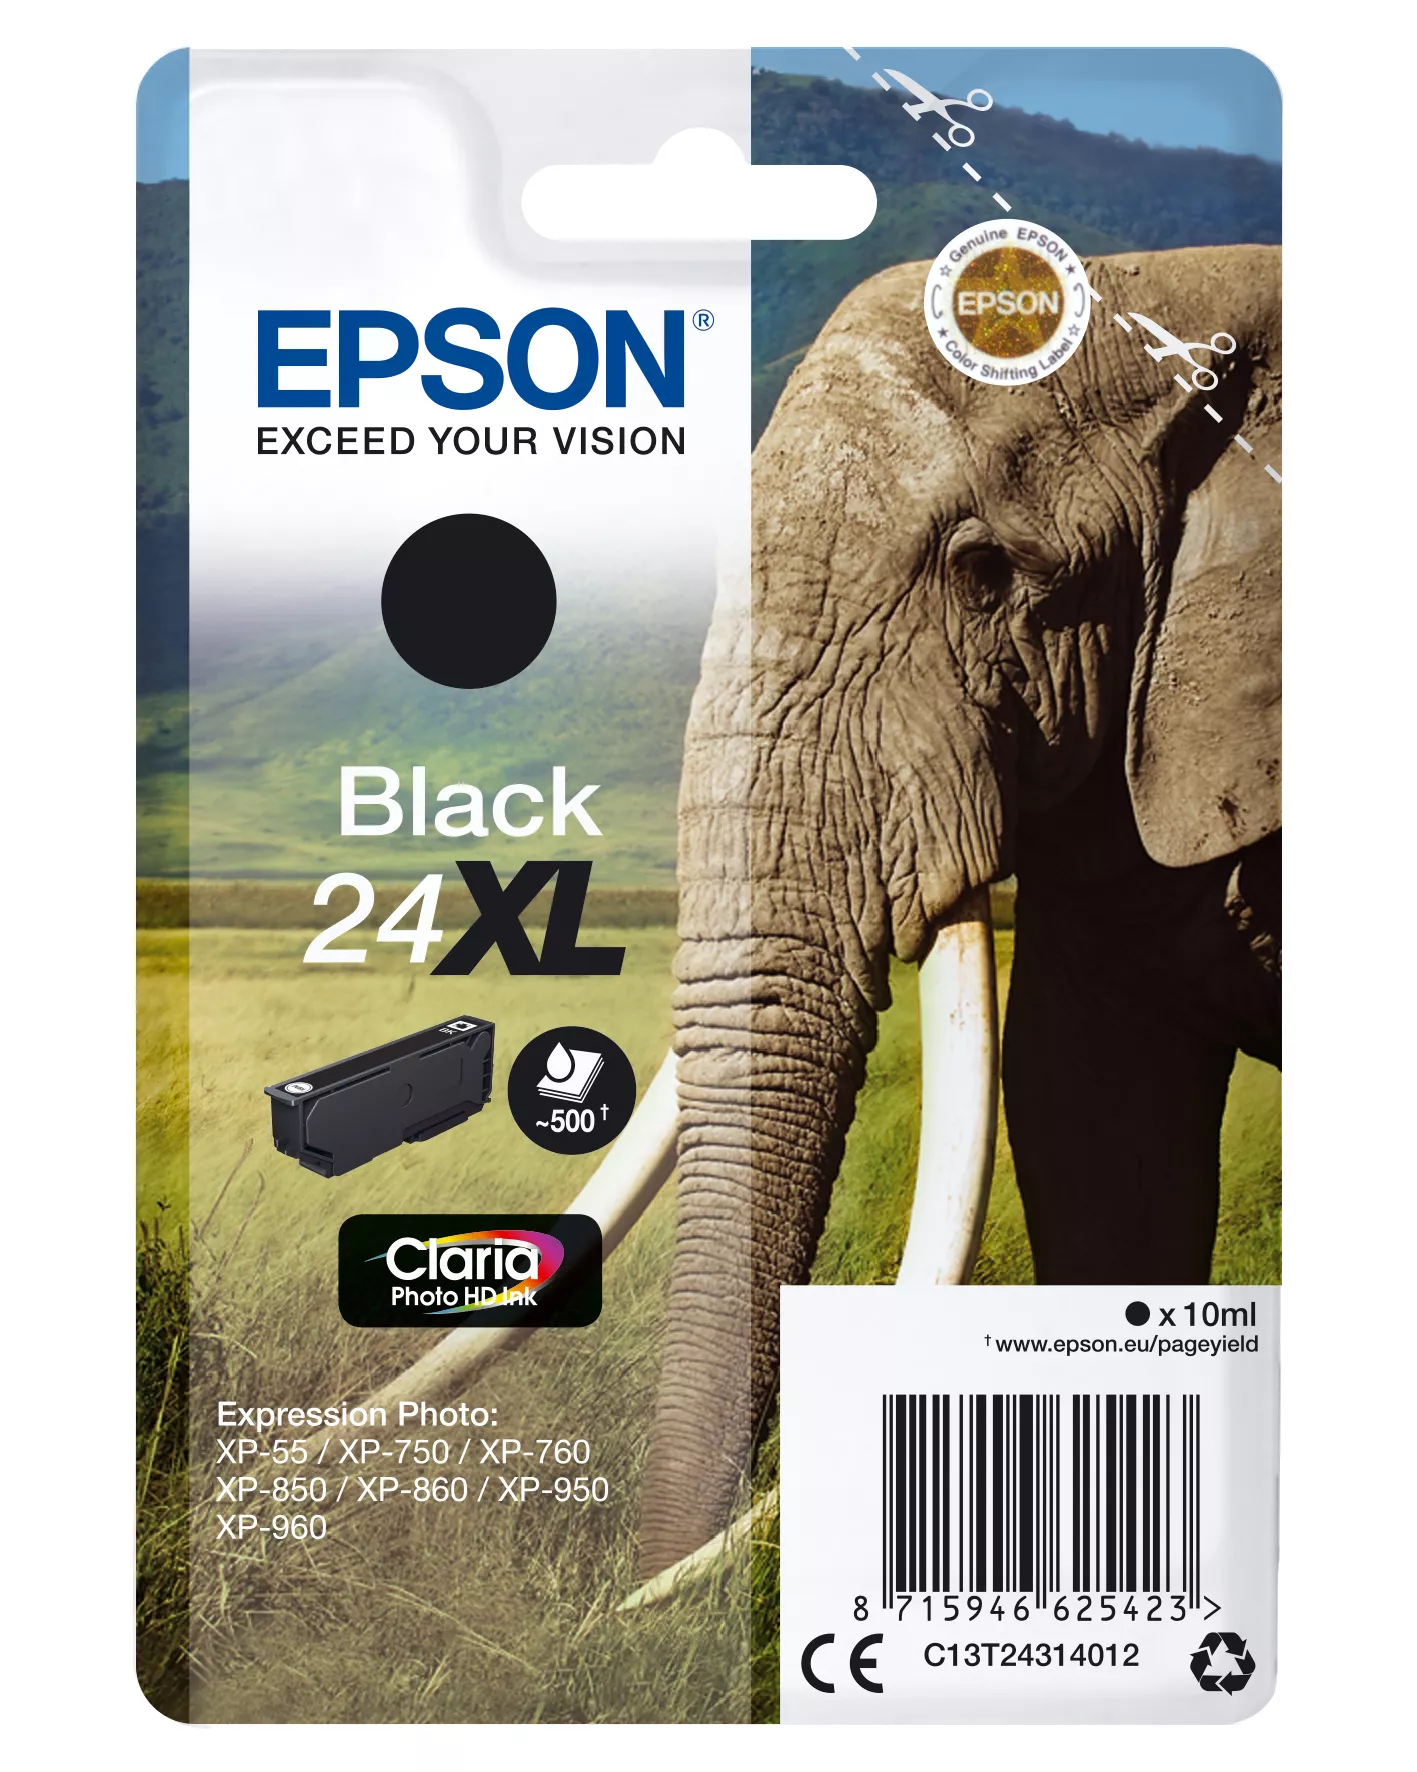 Achat EPSON 24XL cartouche dencre noir haute capacité 10ml 500 au meilleur prix